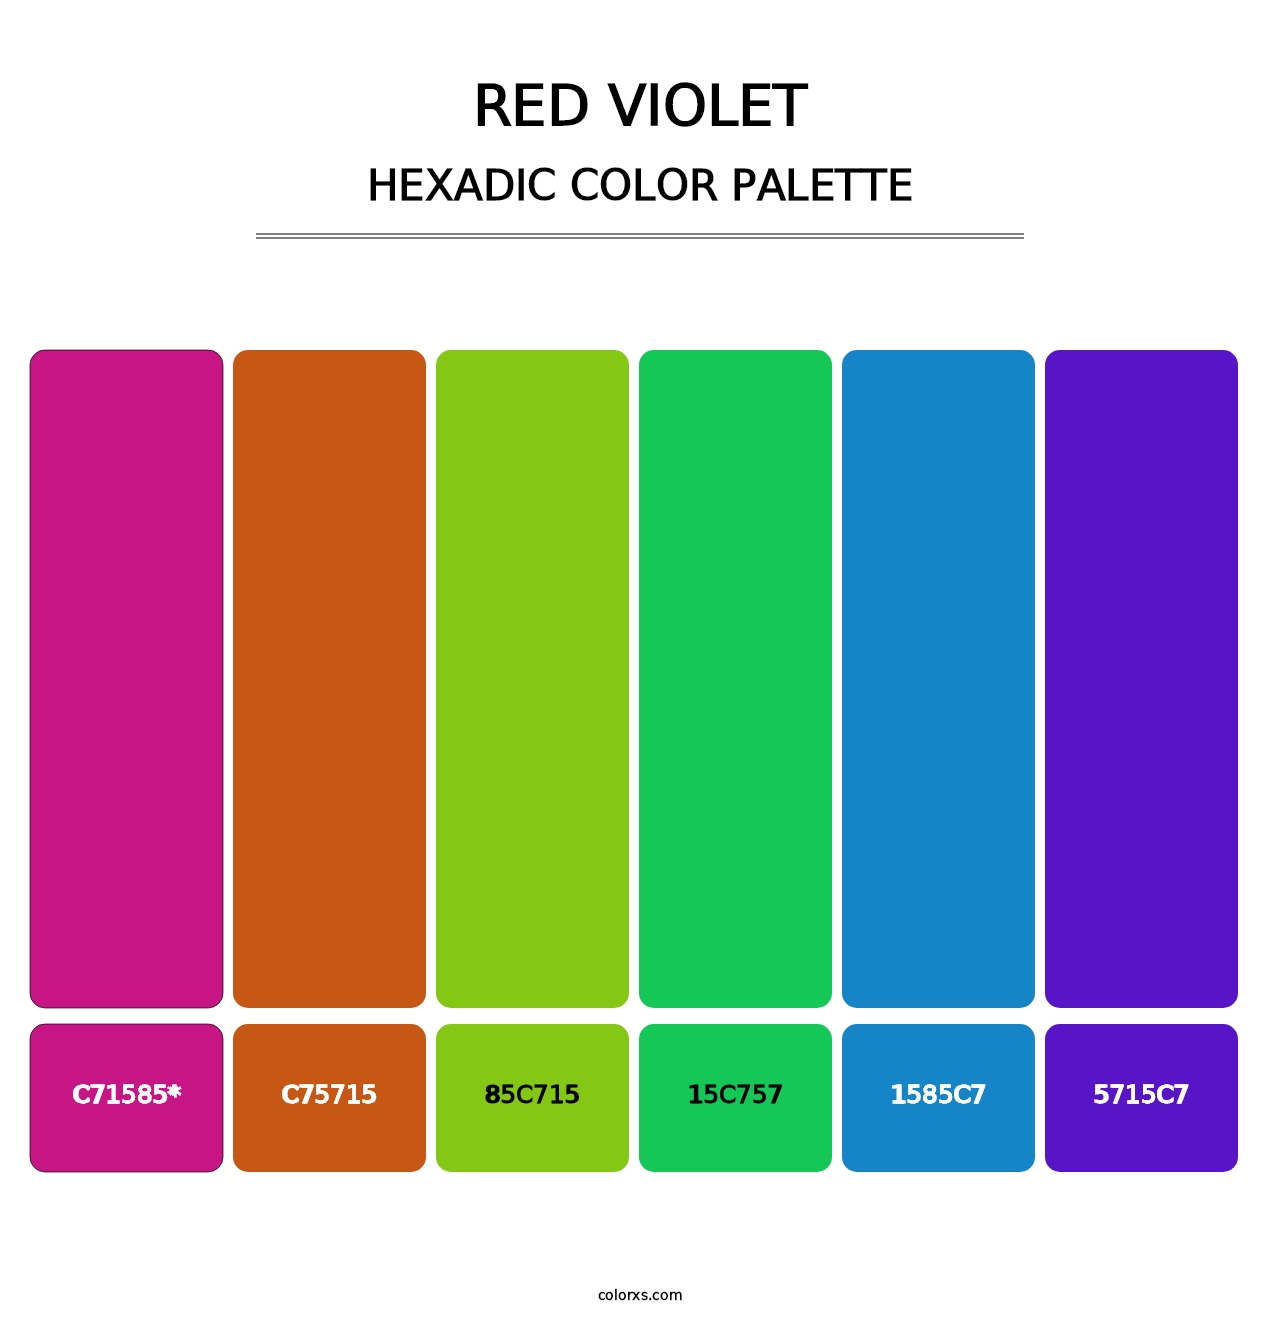 Red Violet - Hexadic Color Palette